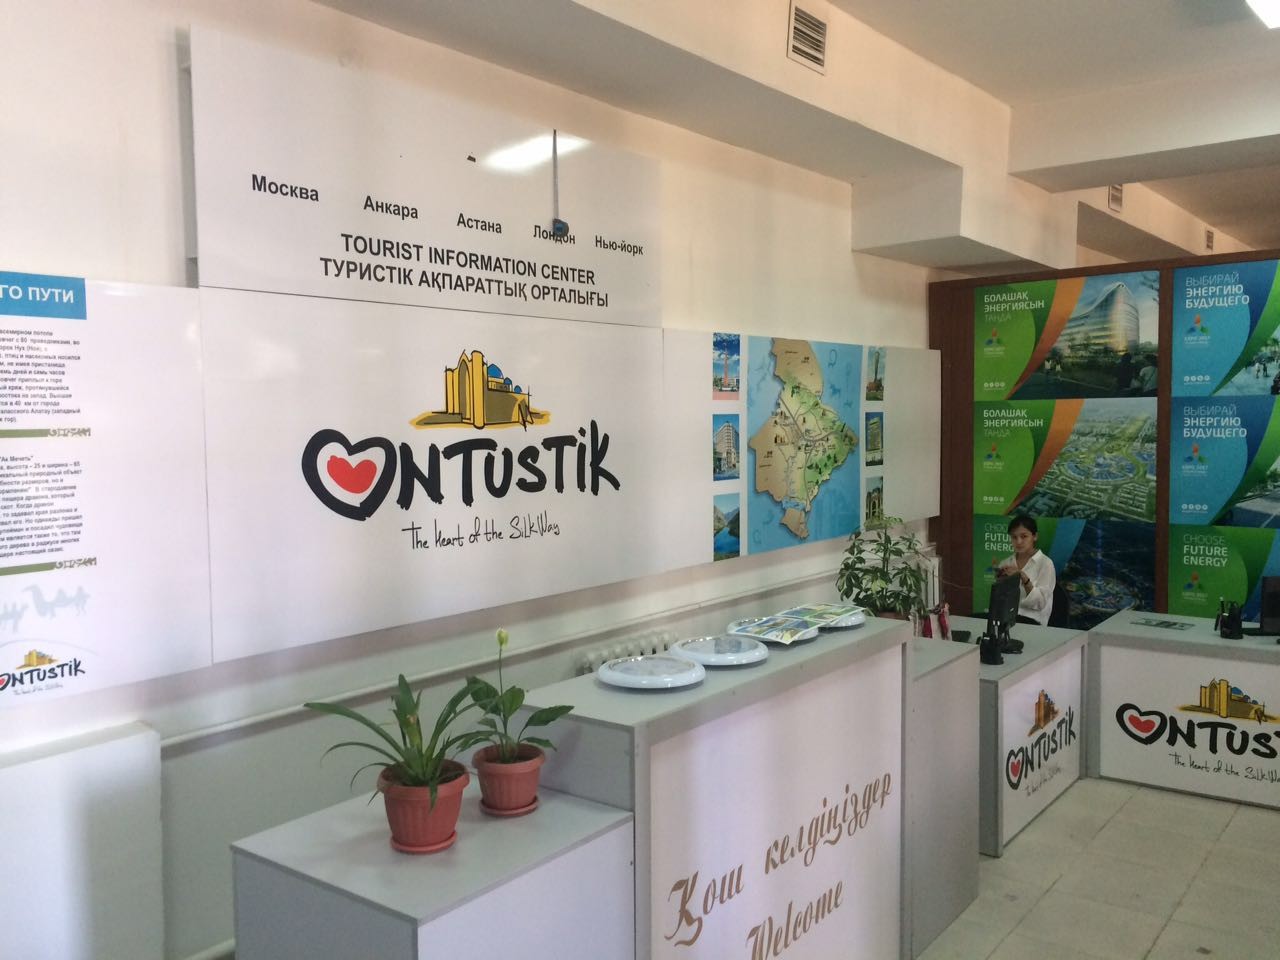 Гостям Южно-Казахстанской области предоставляются больше возможности получить информацию о туристском потенциале региона